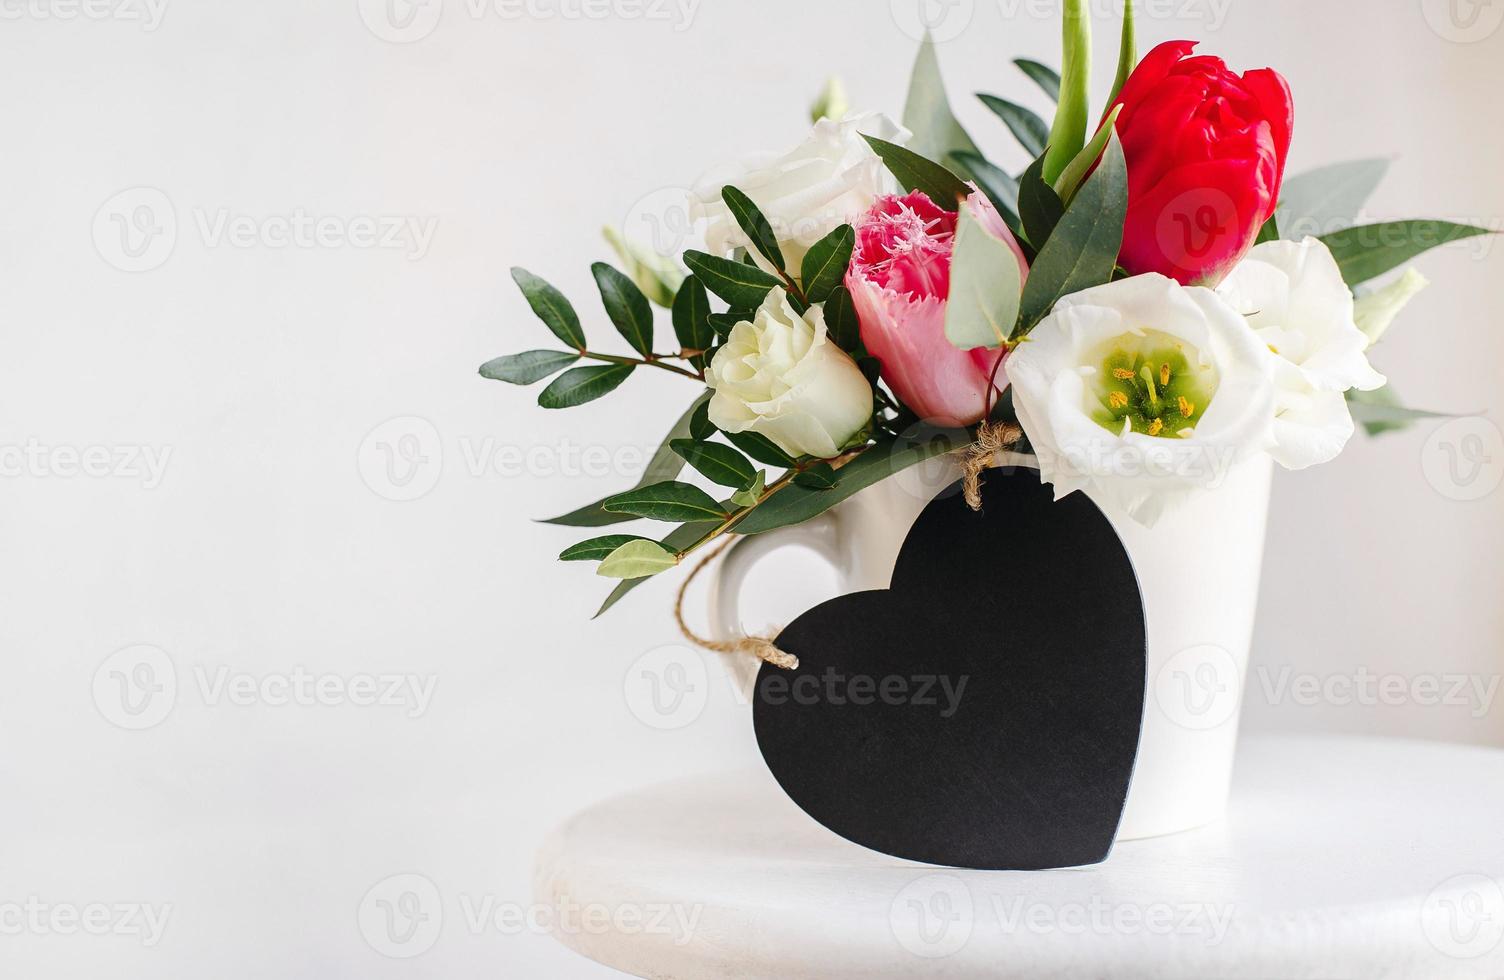 svart tavla hjärta copyspace. vårbukett i vit vas på vit träställning. rosor, tulpaner och lisianthus. foto